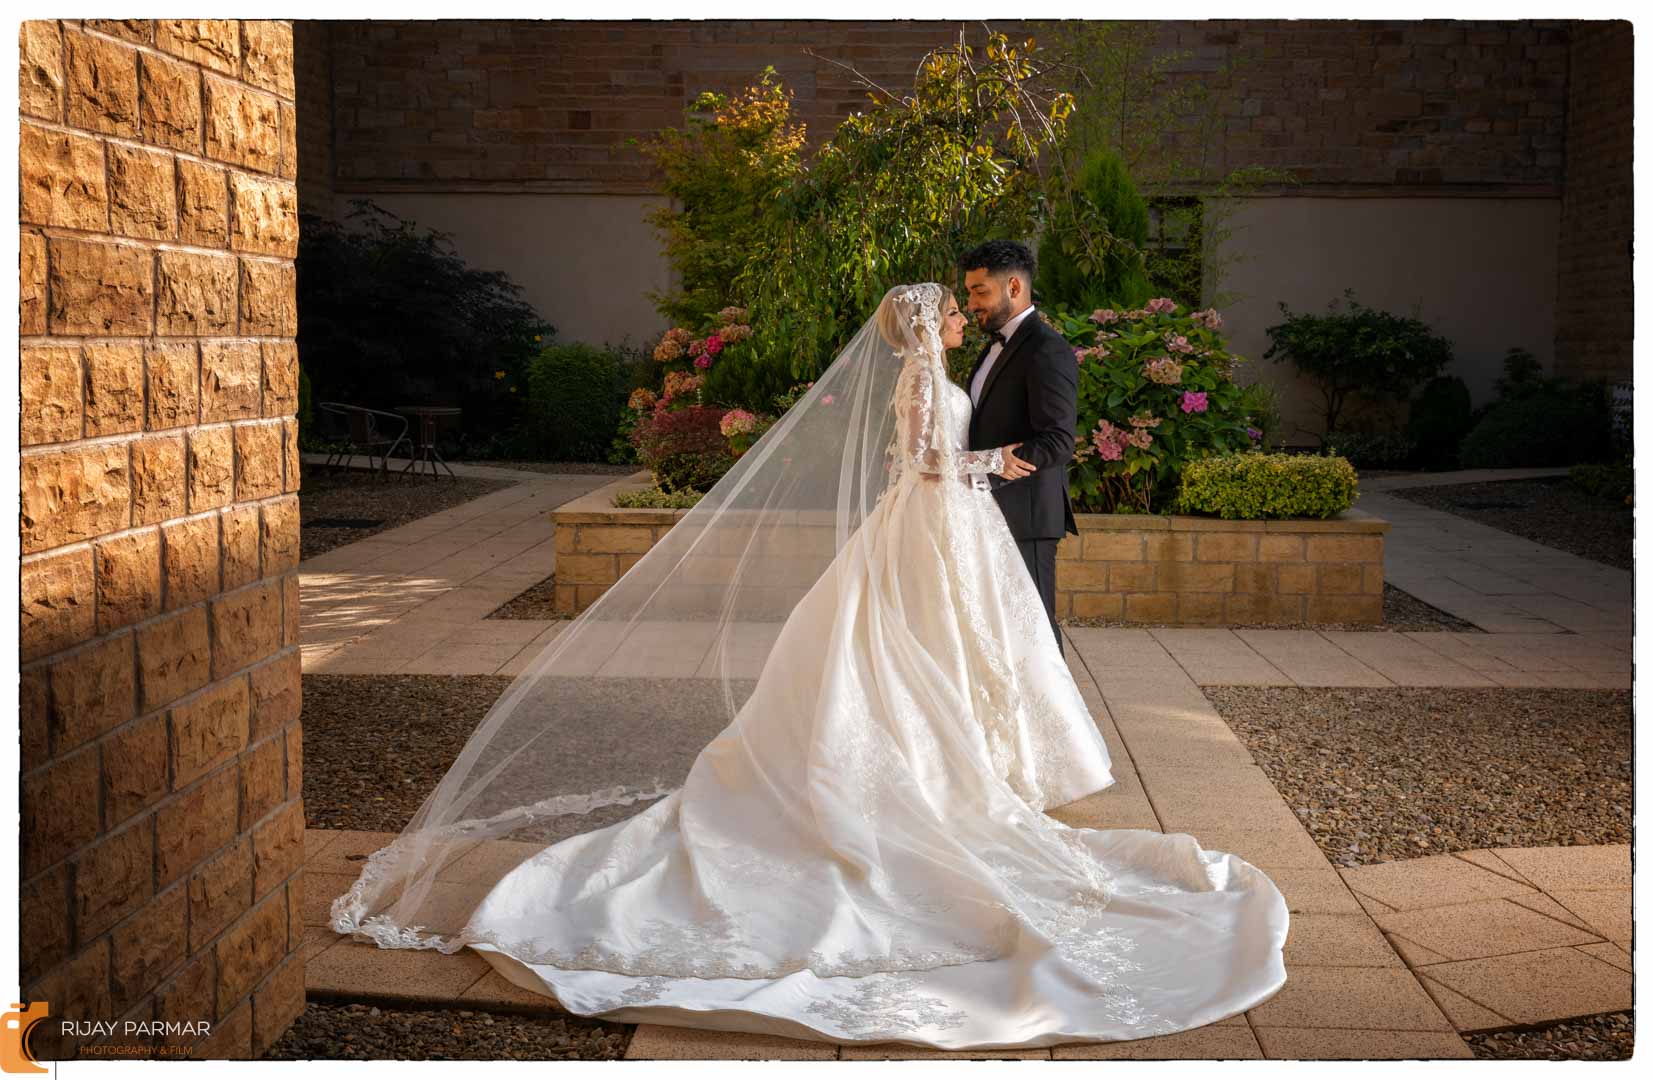 Mariya and Junaid's Indian wedding photography photoshoot Blackburn (11 of 17)